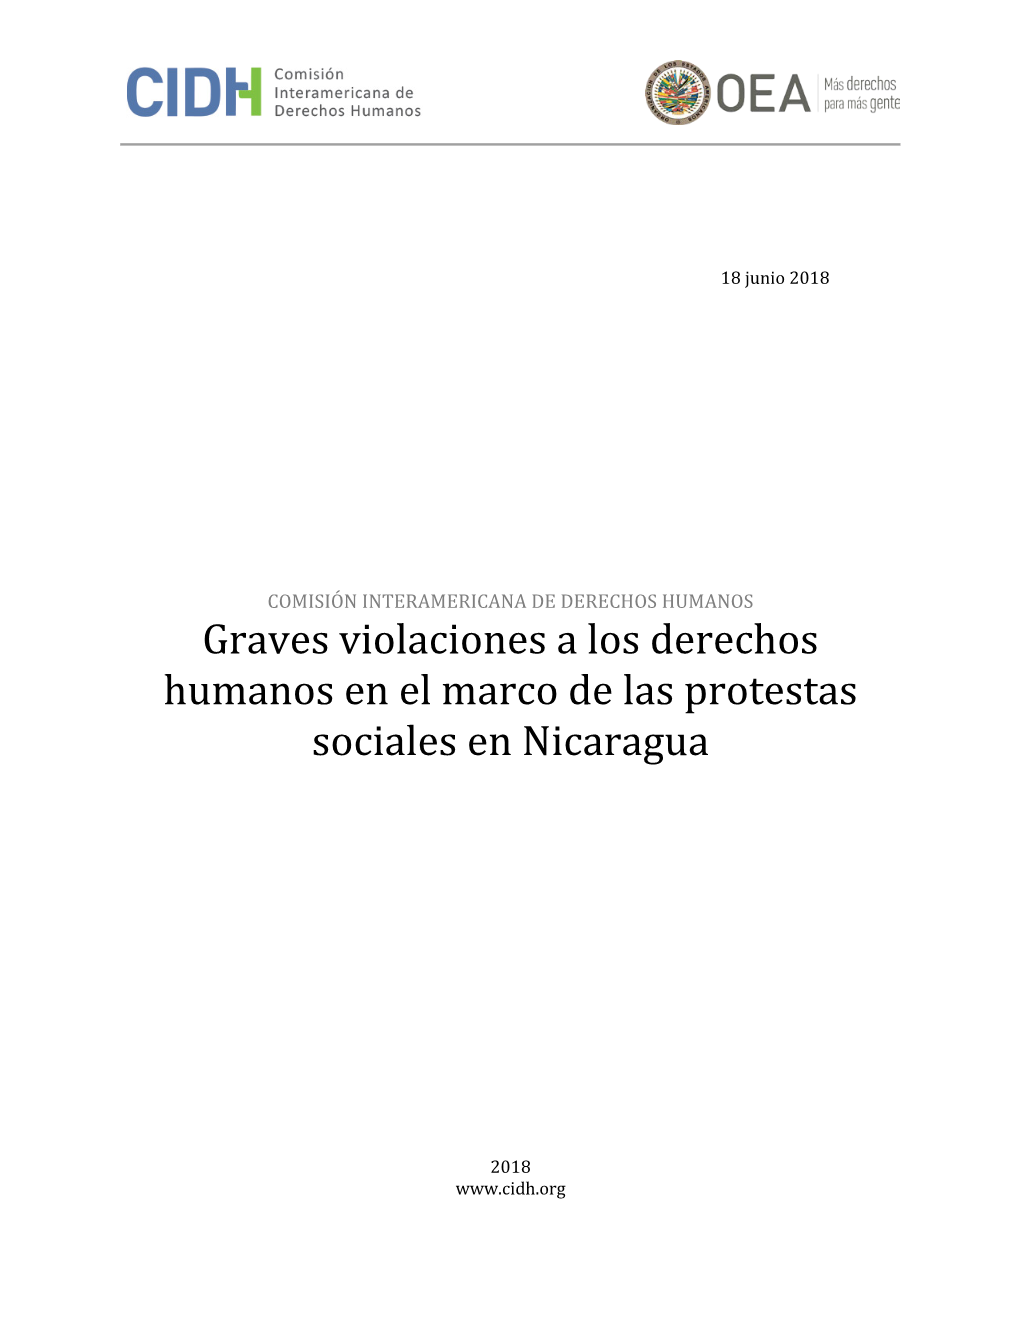 Derechos Humanos En El Marco De Las Protestas Sociales En Nicaragua